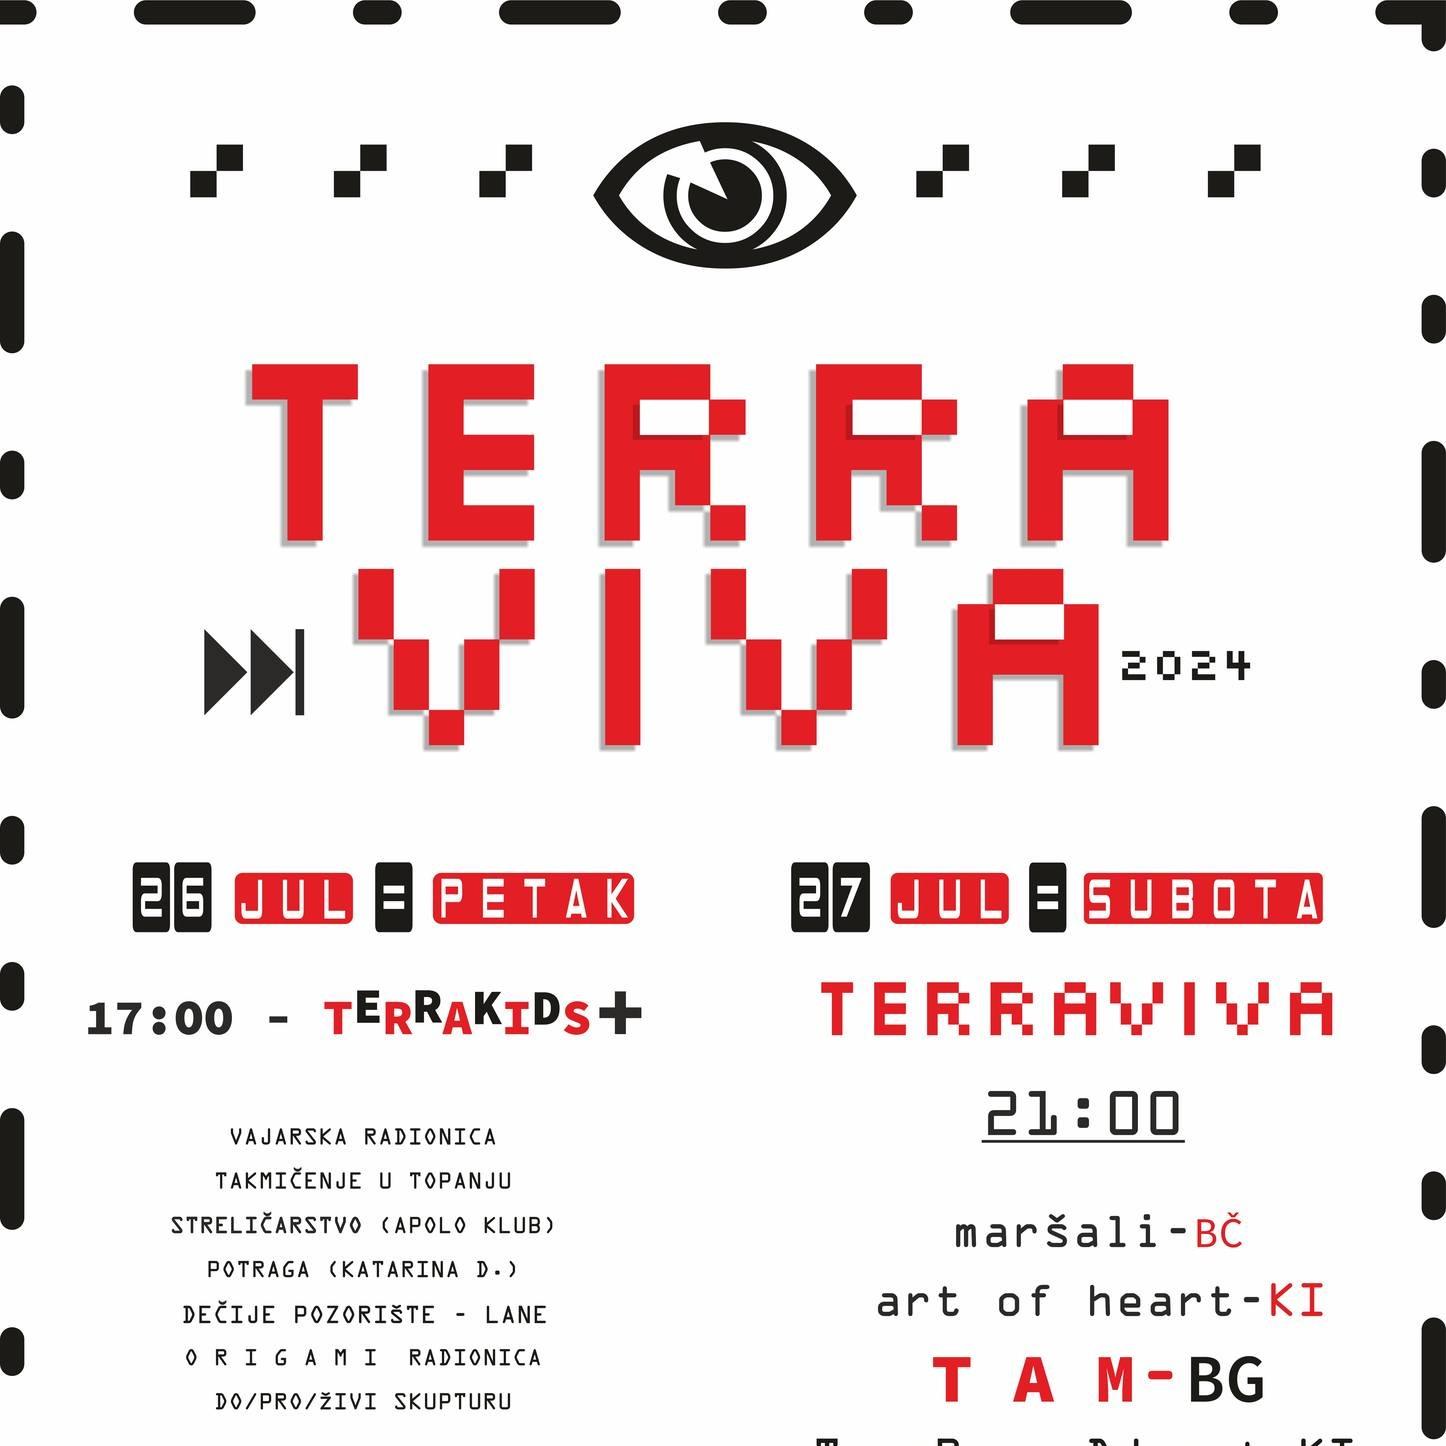 12. Terra Viva Festival